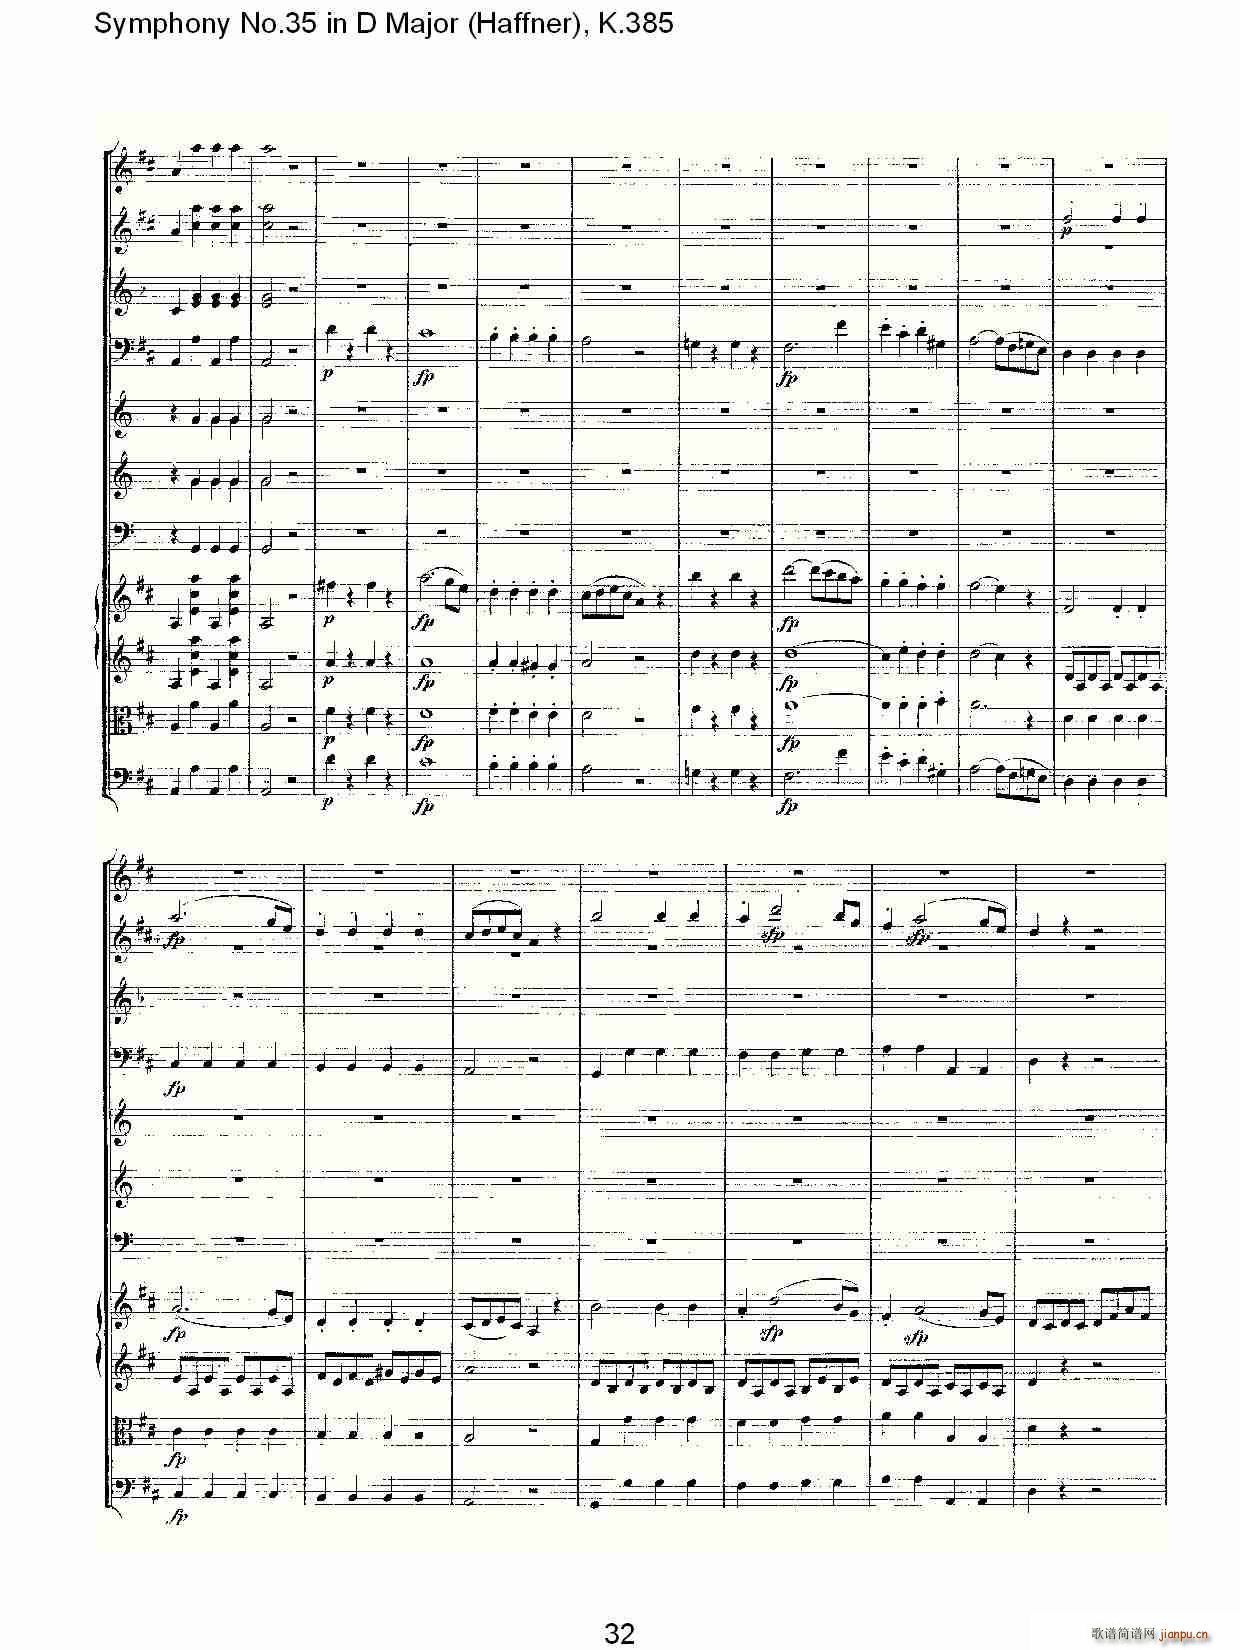 Symphony No.35 in D Major, K.385(ʮּ)32